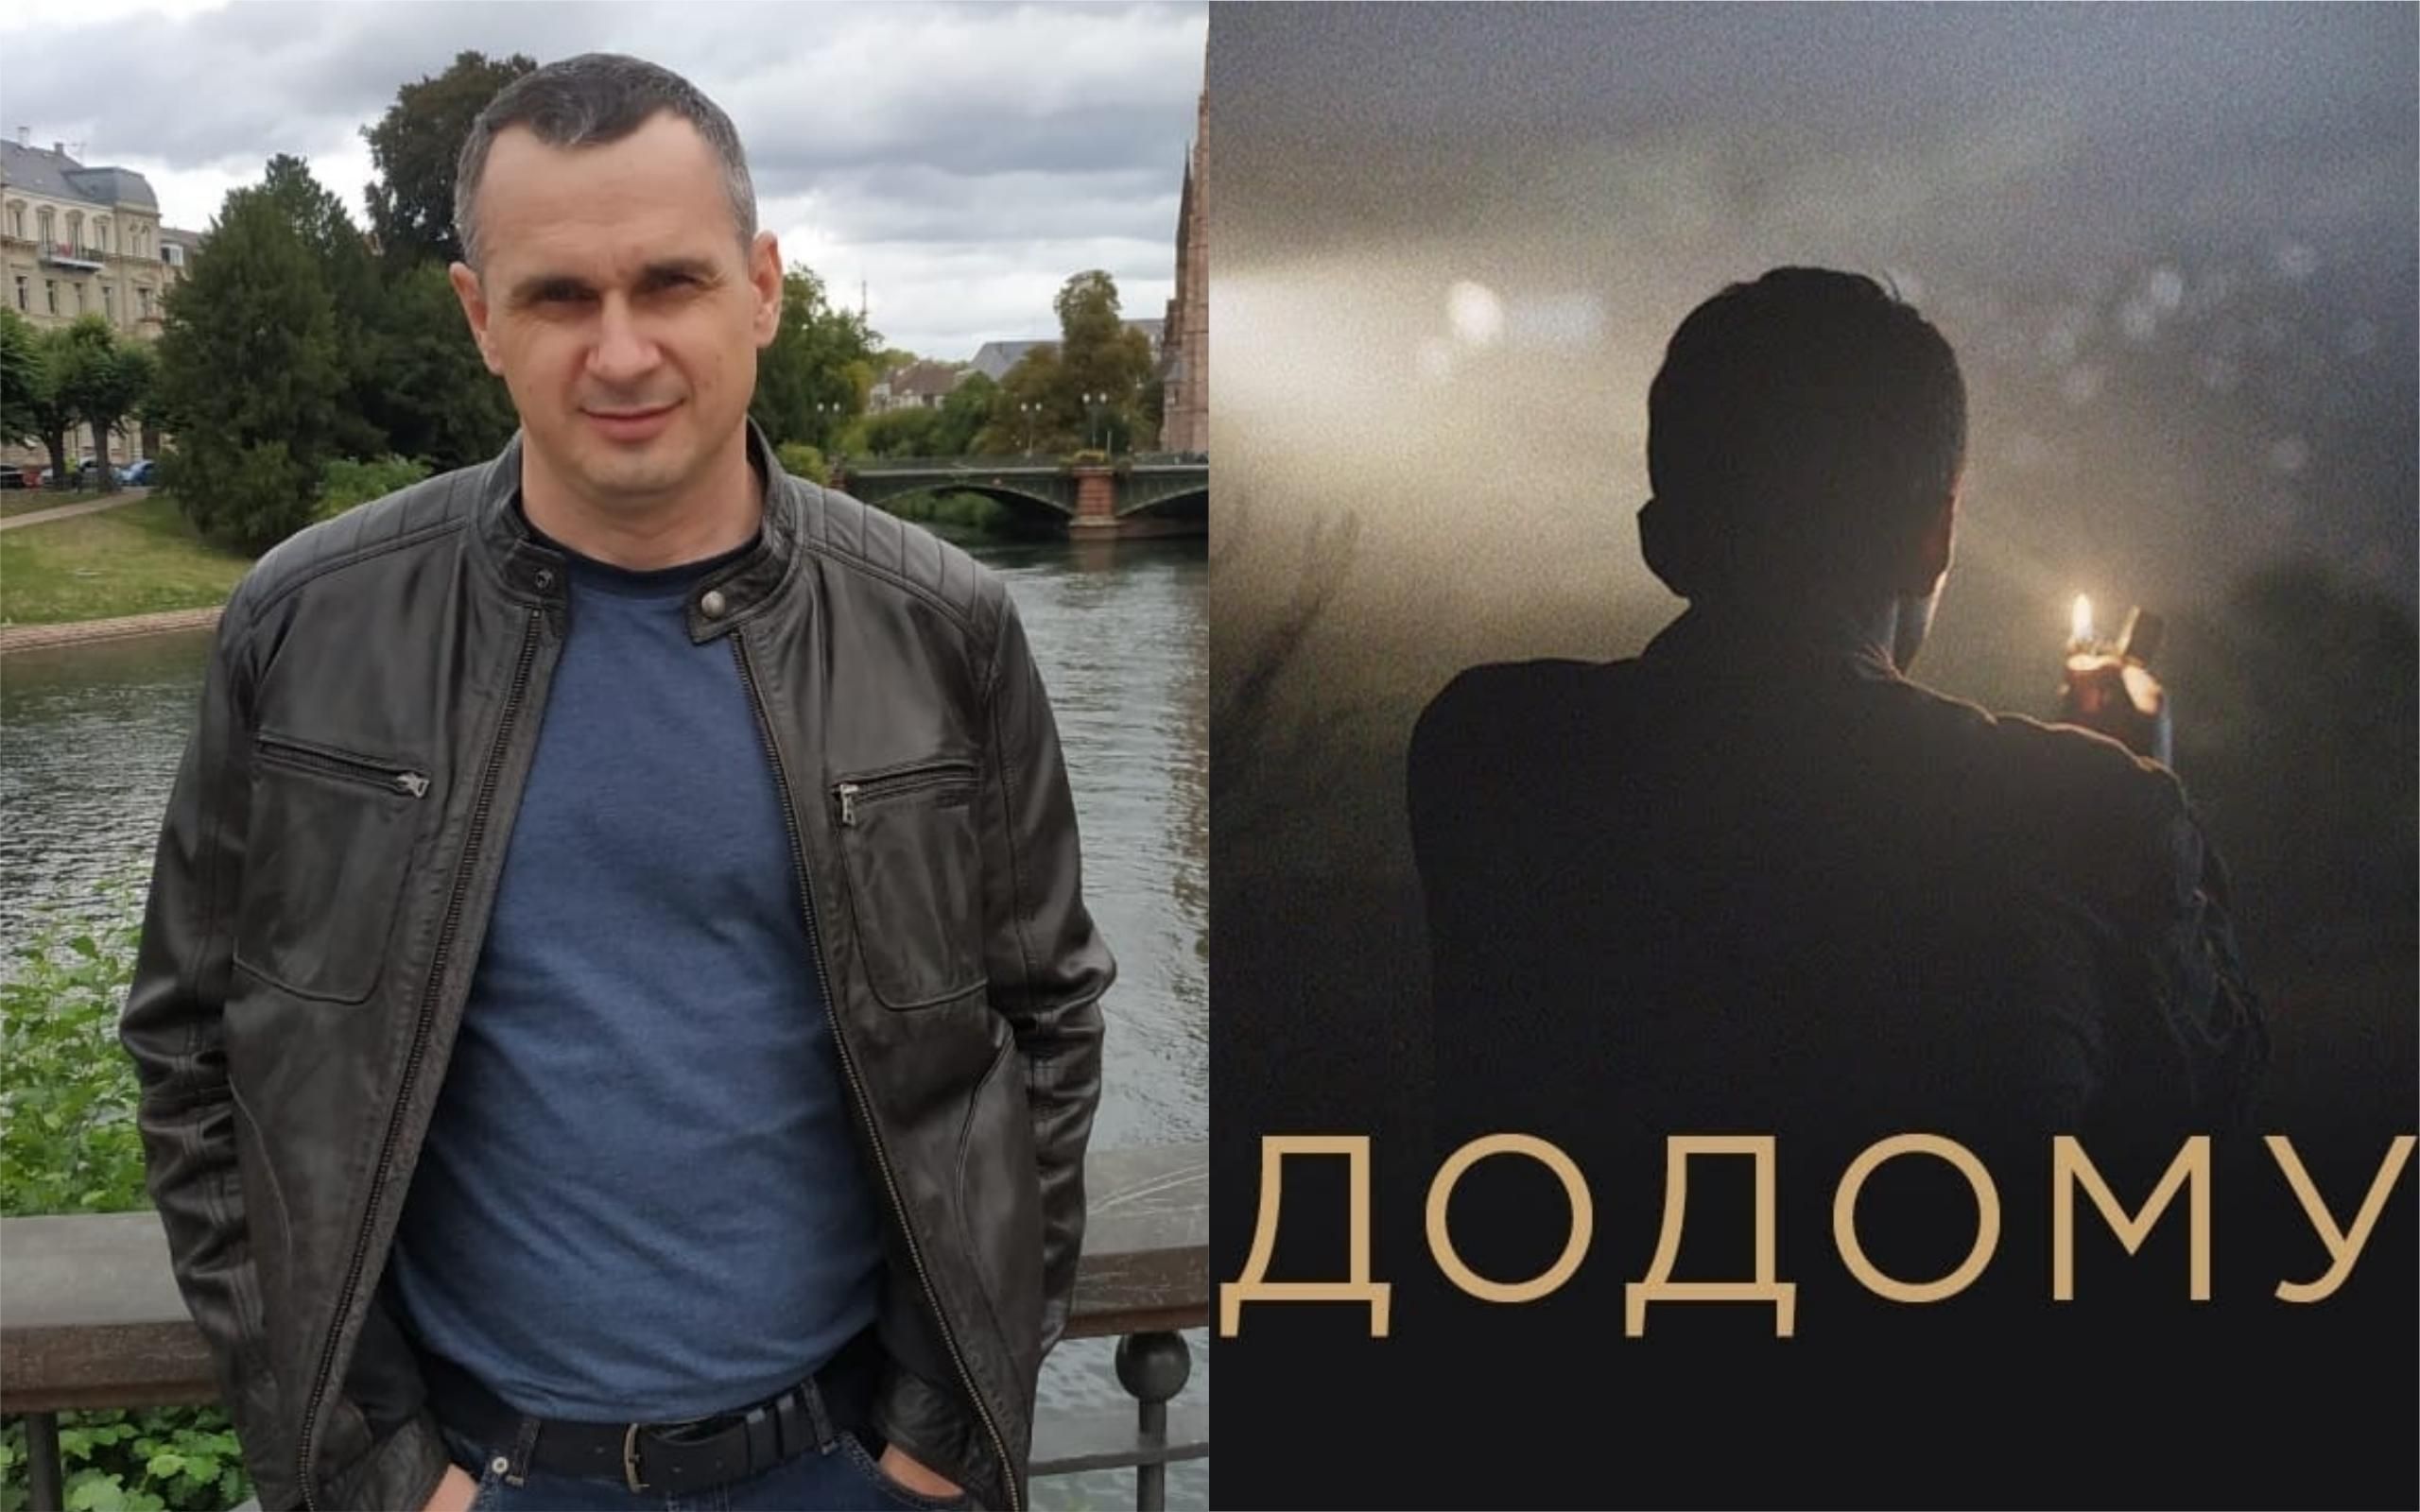 Кіно, яке болить, – Олег Сенцов побував на прем'єрі фільму "Додому" про Крим